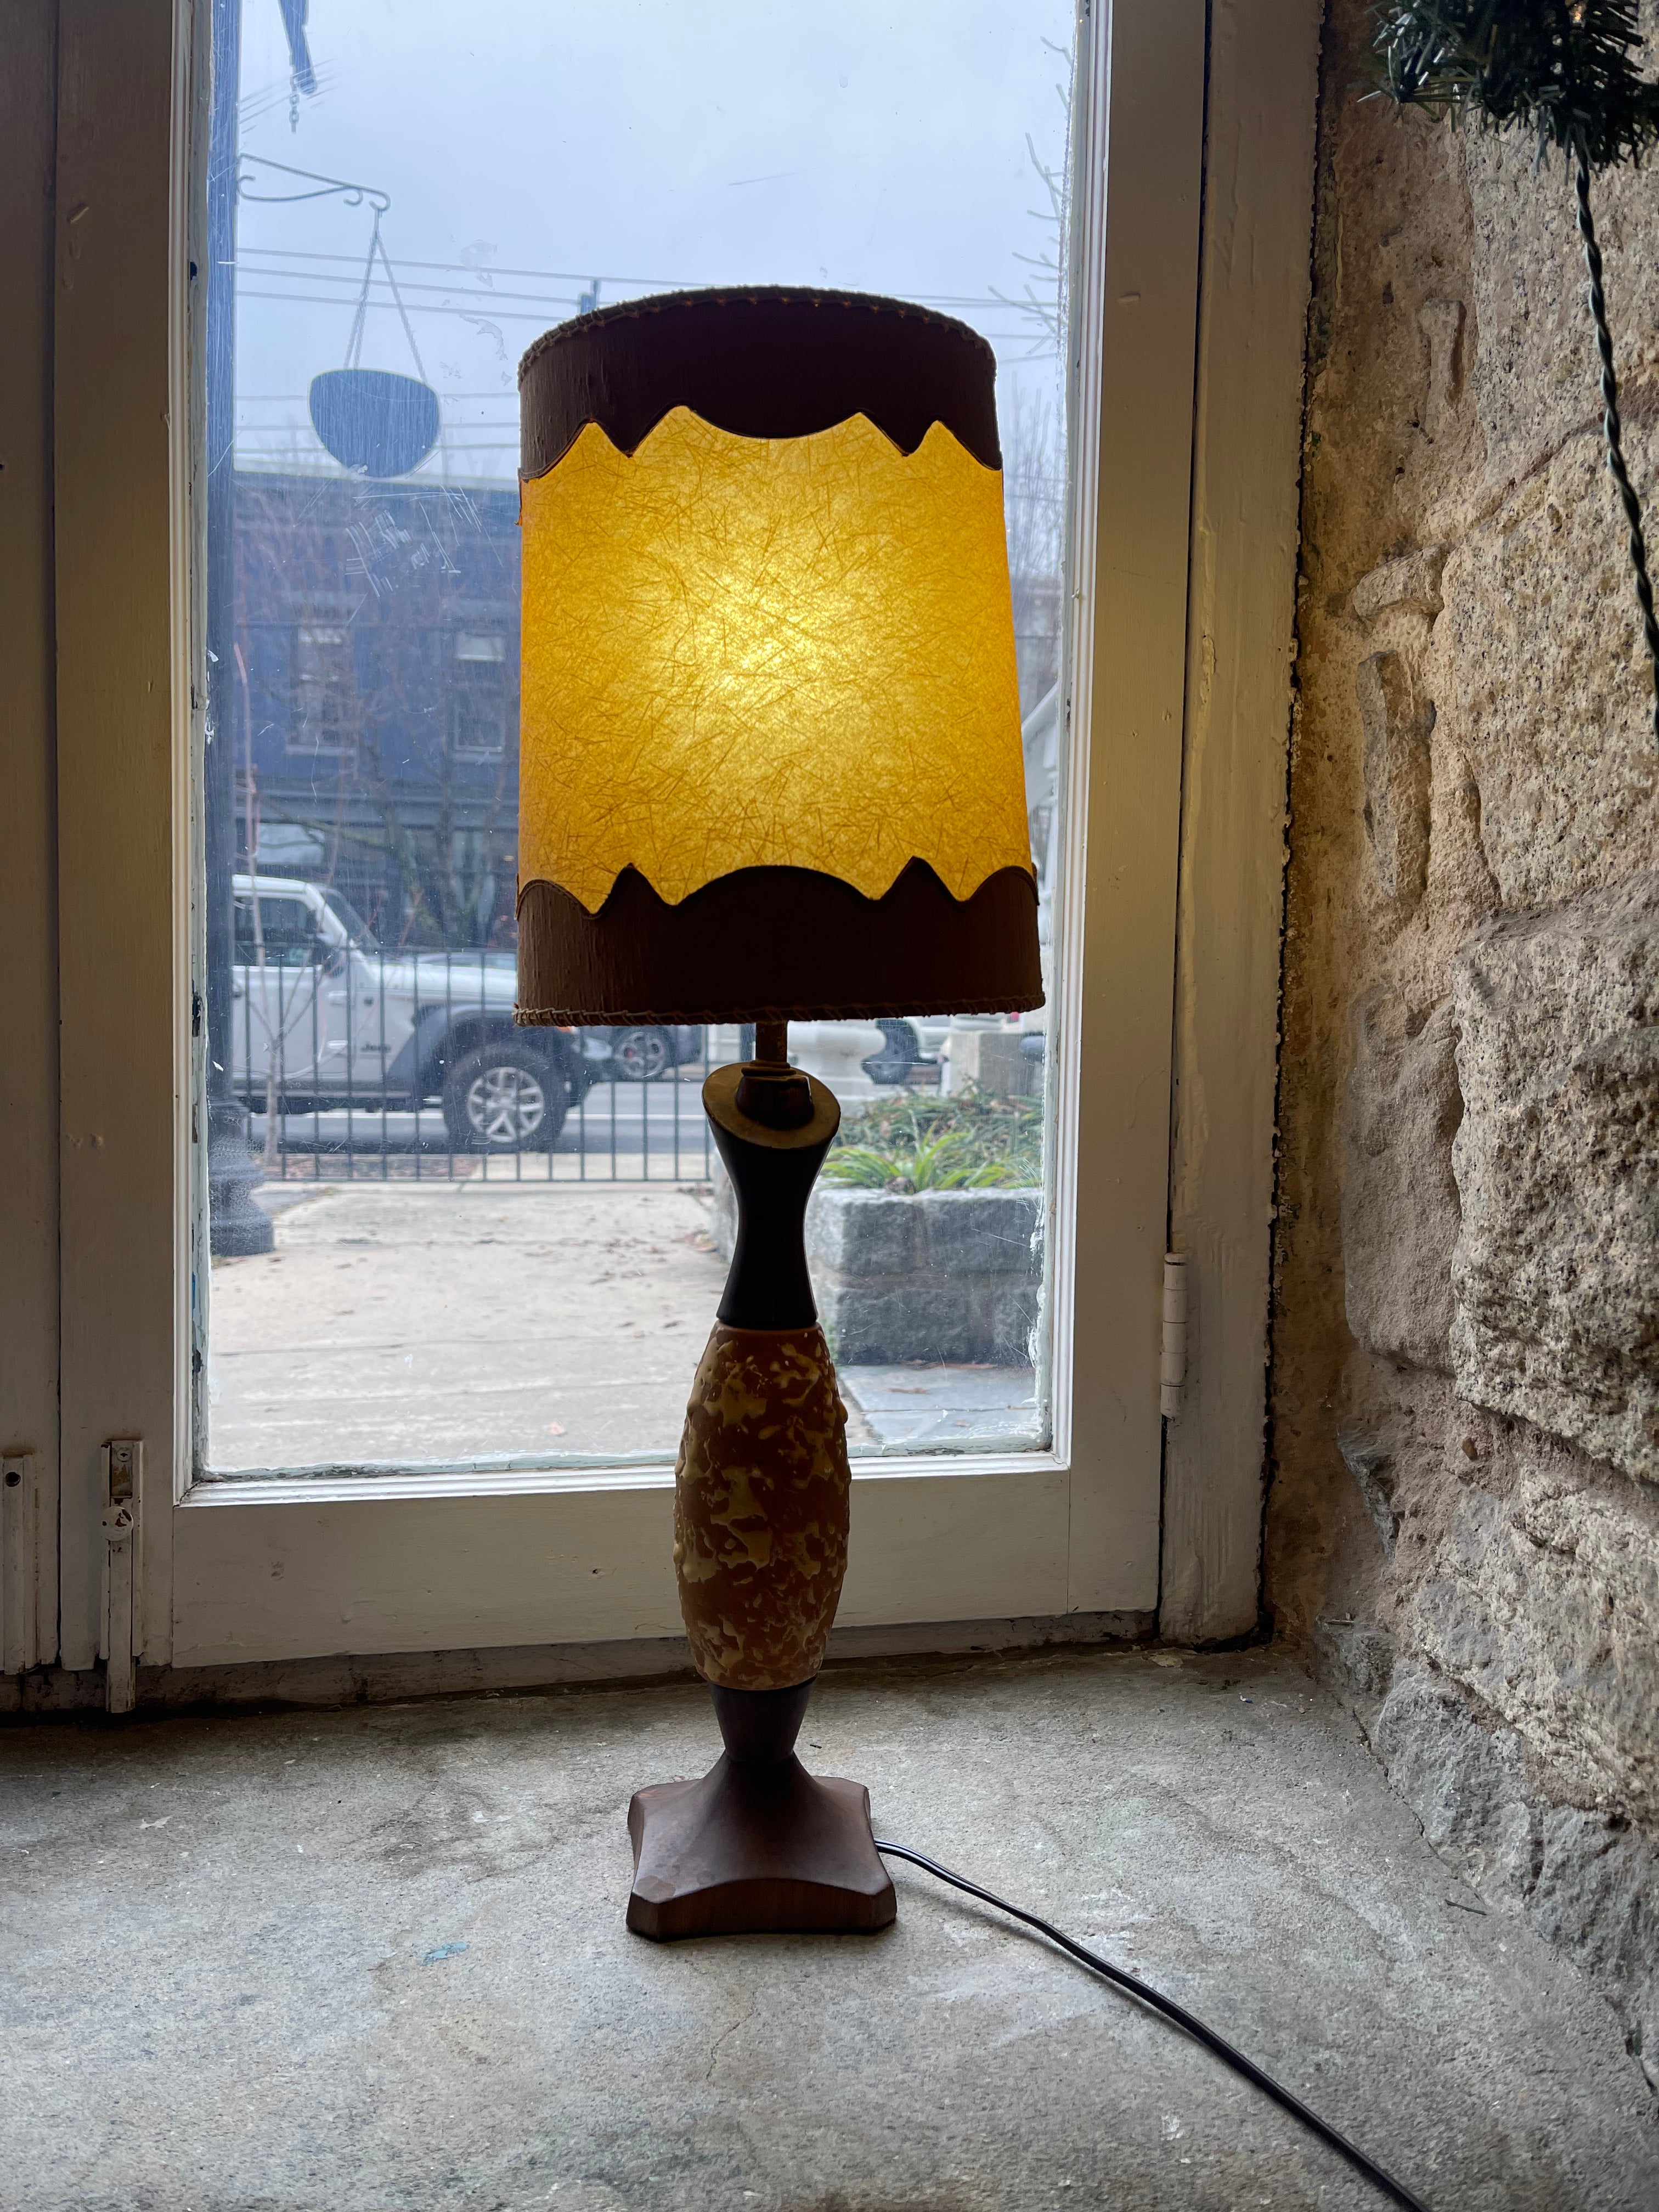 Beige & Brown Midcentury Lamp